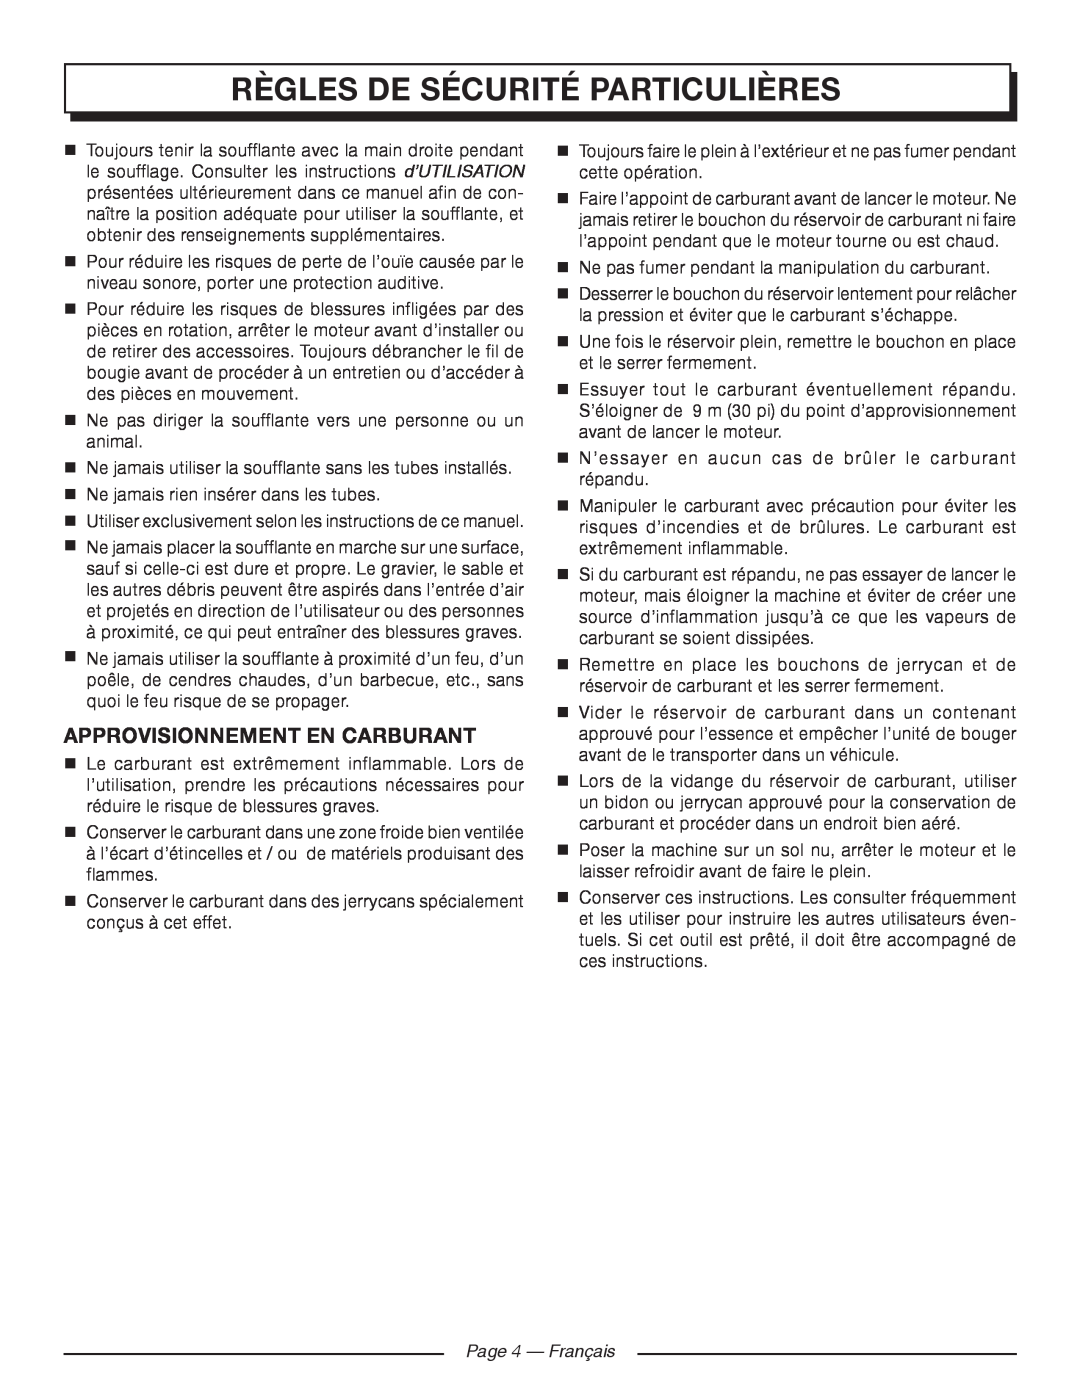 Homelite UT09520 manuel dutilisation Règles De Sécurité Particulières, Approvisionnement En Carburant, Page 4 - Français 